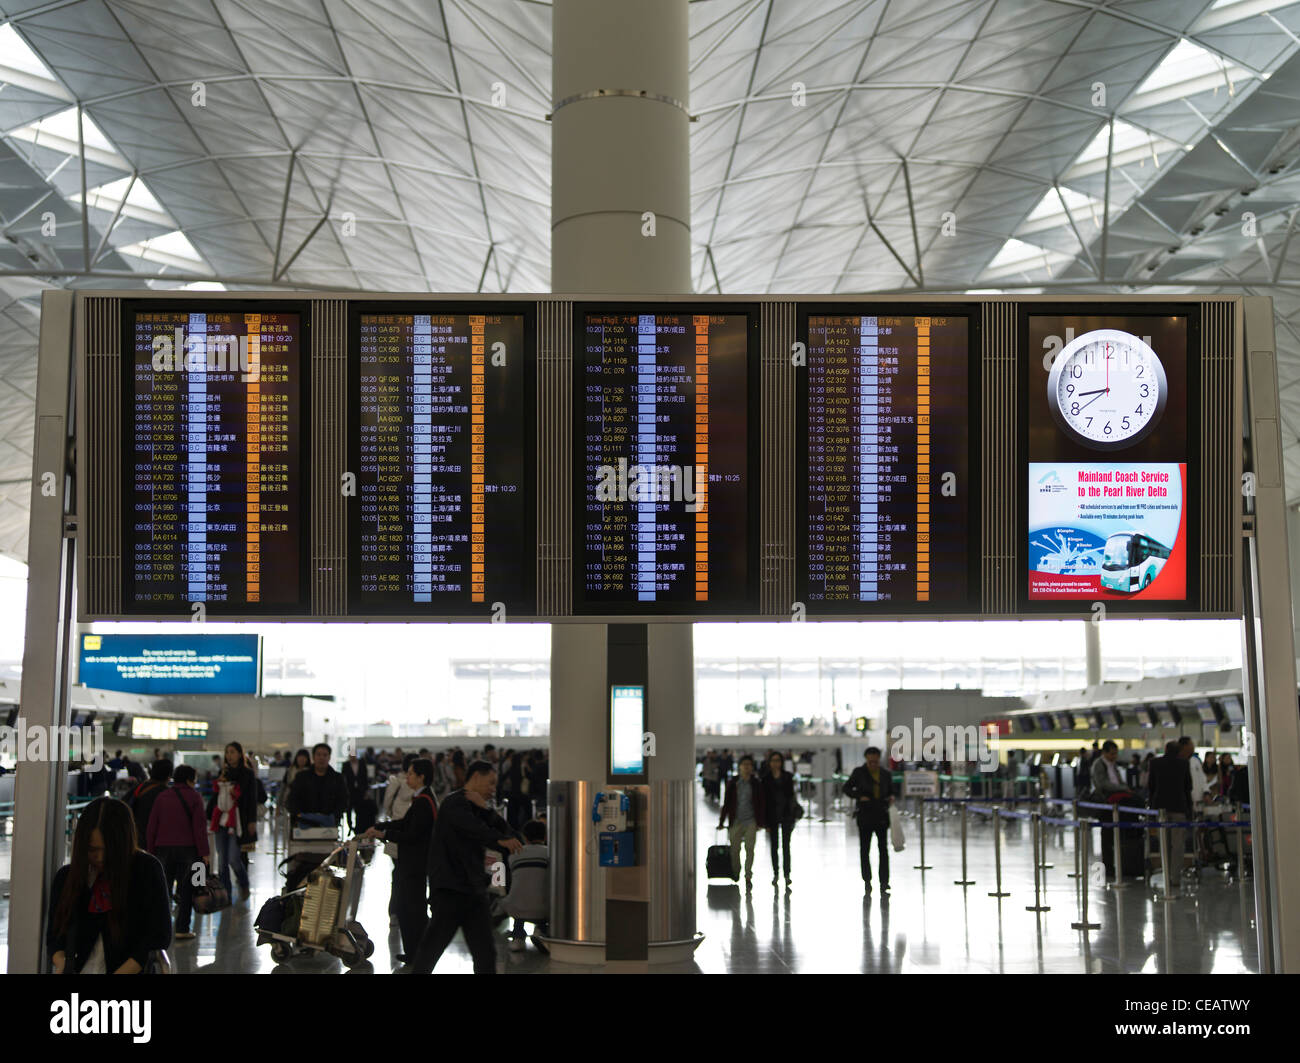 DH Hong Kong Aeropuerto CHEK LAP KOK HONG KONG Terminal 1 salidas electrónicas a bordo información de pasajeros de vuelos llegadas Foto de stock